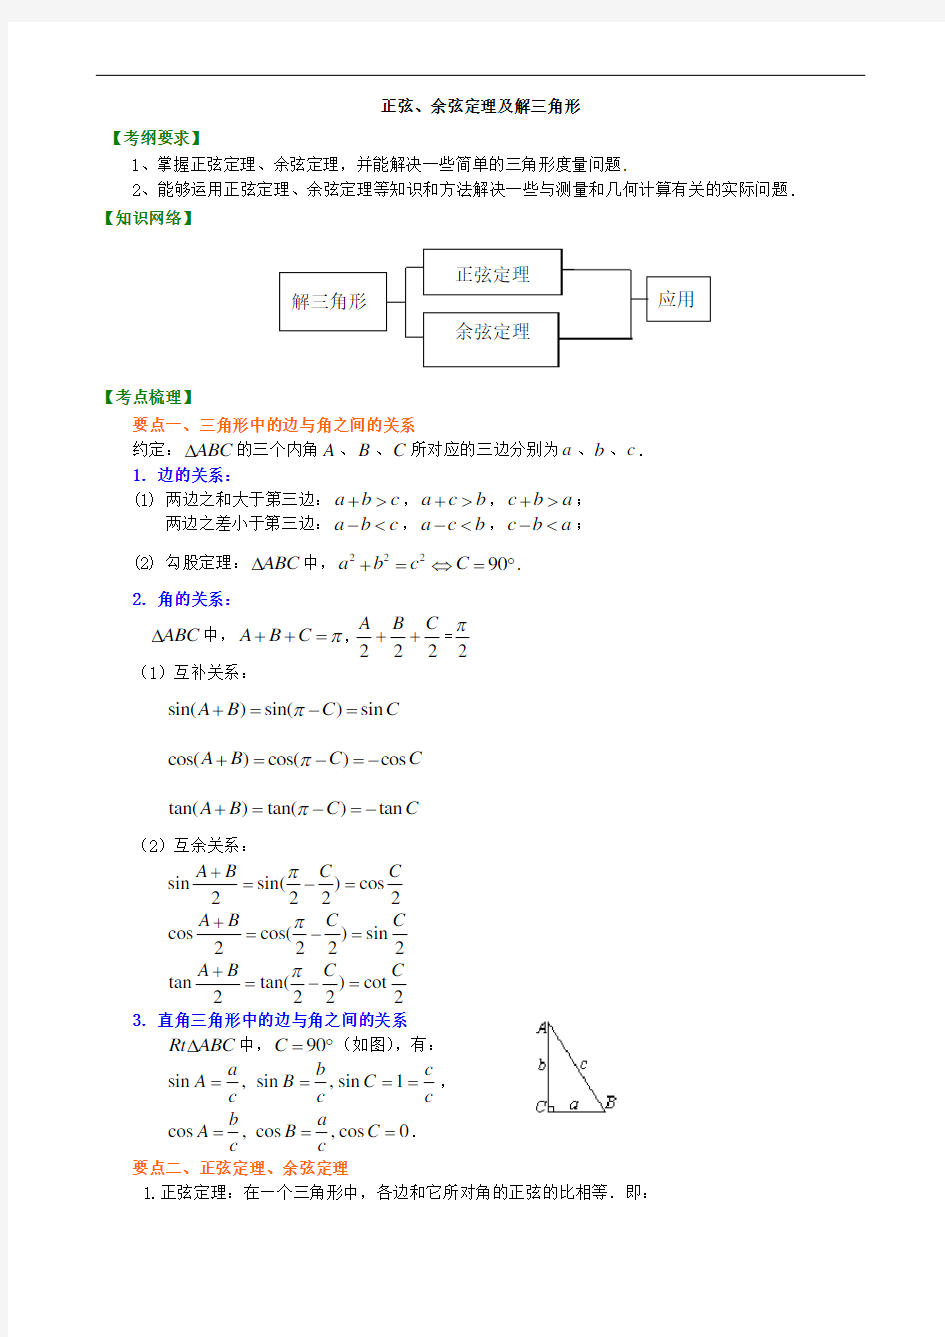 高考冲刺 正弦、余弦定理及解三角形_基础